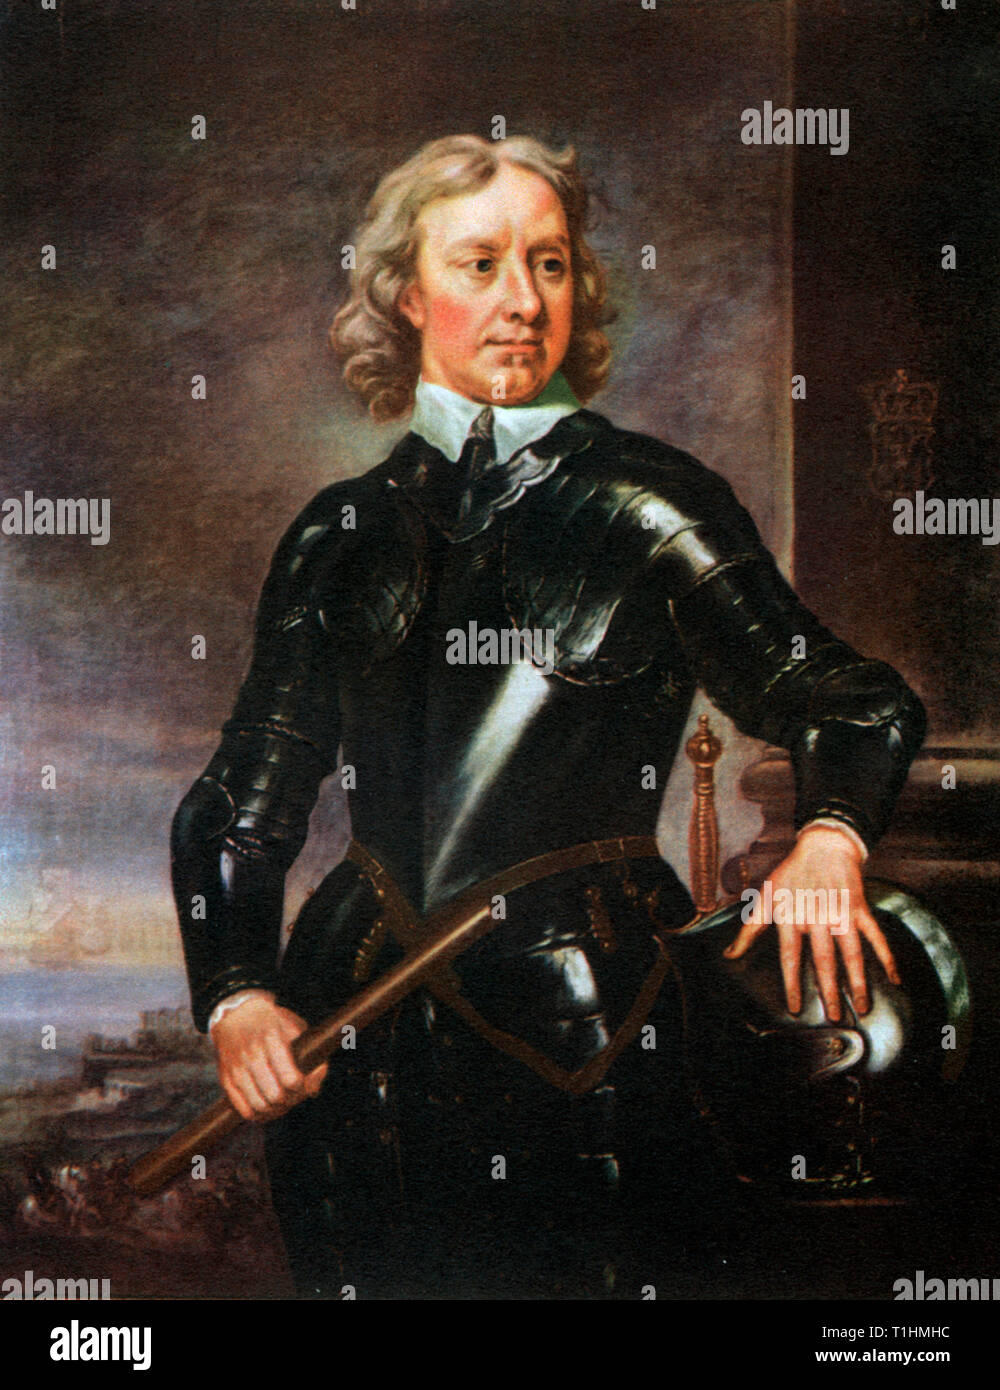 Oliver Cromwell (1599-1698). Samuel nach Cooper (1609-1672). Oliver Cromwell, Englischer militärische und politische Führer und später Lord Protector des Commonwealth von England, Schottland und Irland. Cromwell war eine zentrale Figur im Englischen Bürgerkrieg führenden die Parlamentarier nichts anderes als die "Roudheads" bekannt. Stockfoto